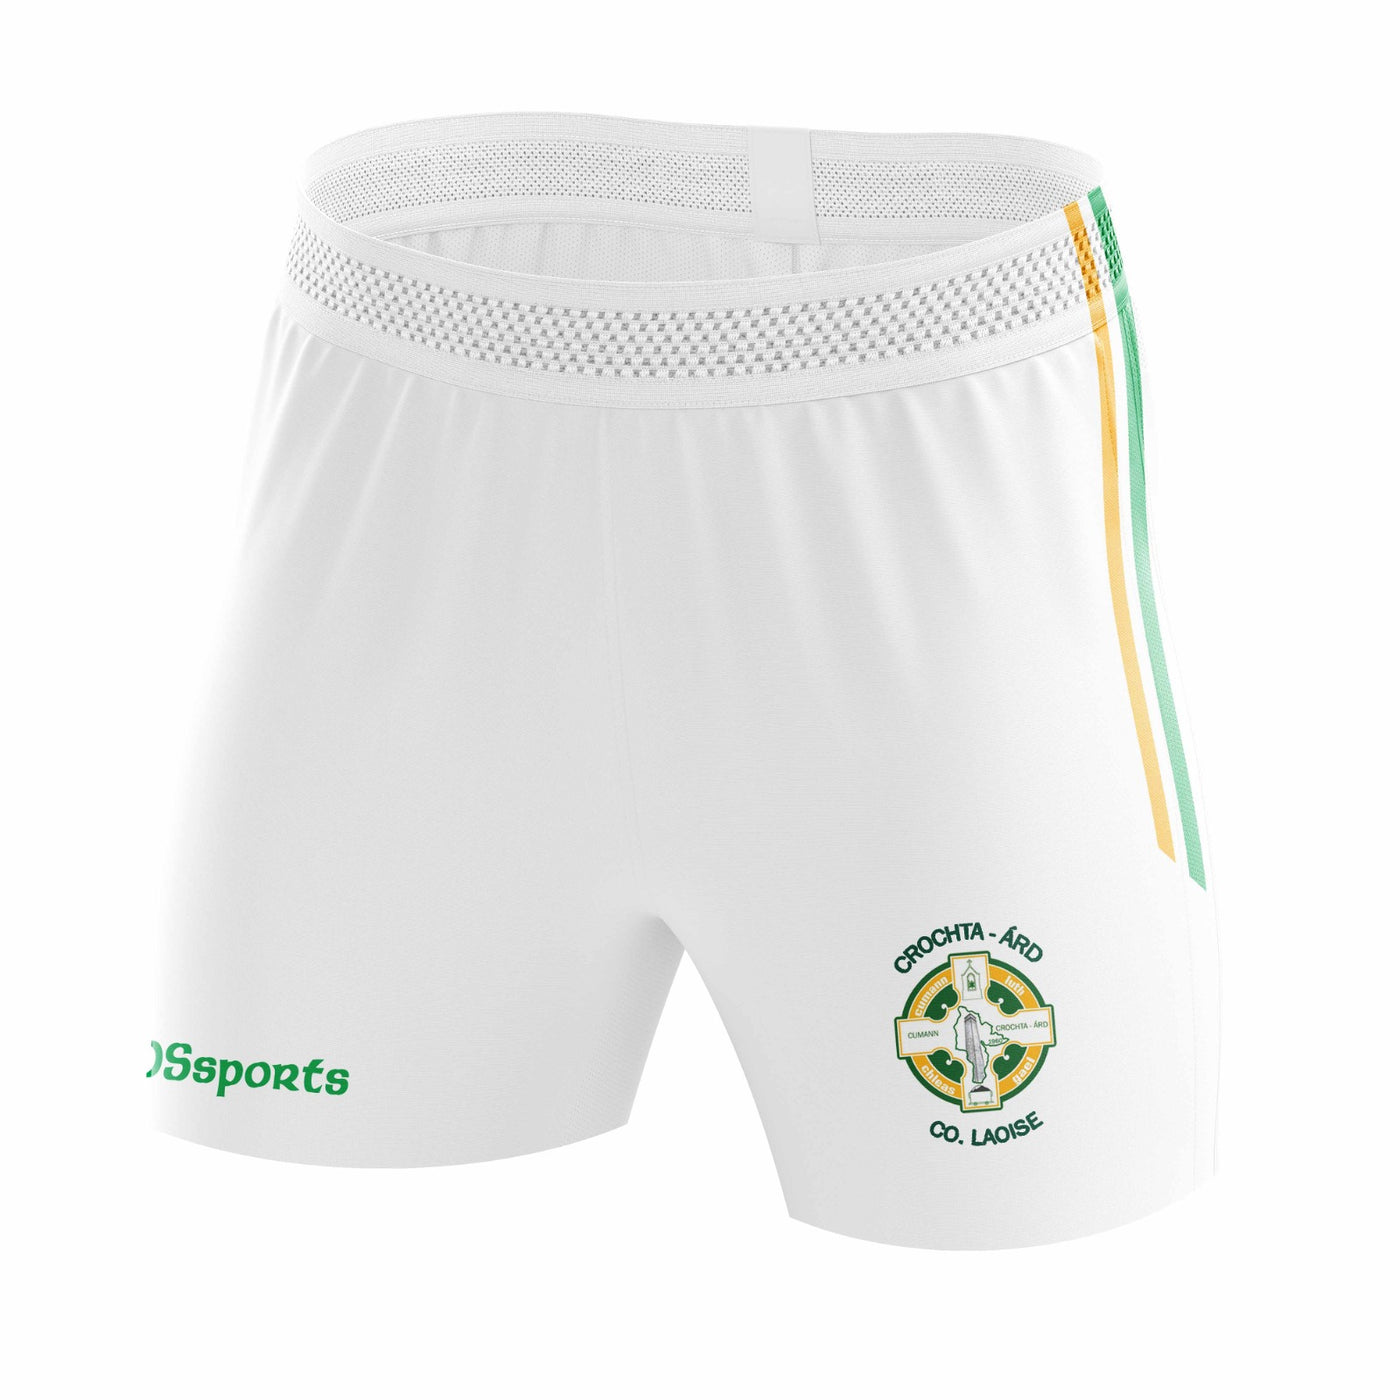 Crettyard GAA - Match Shorts